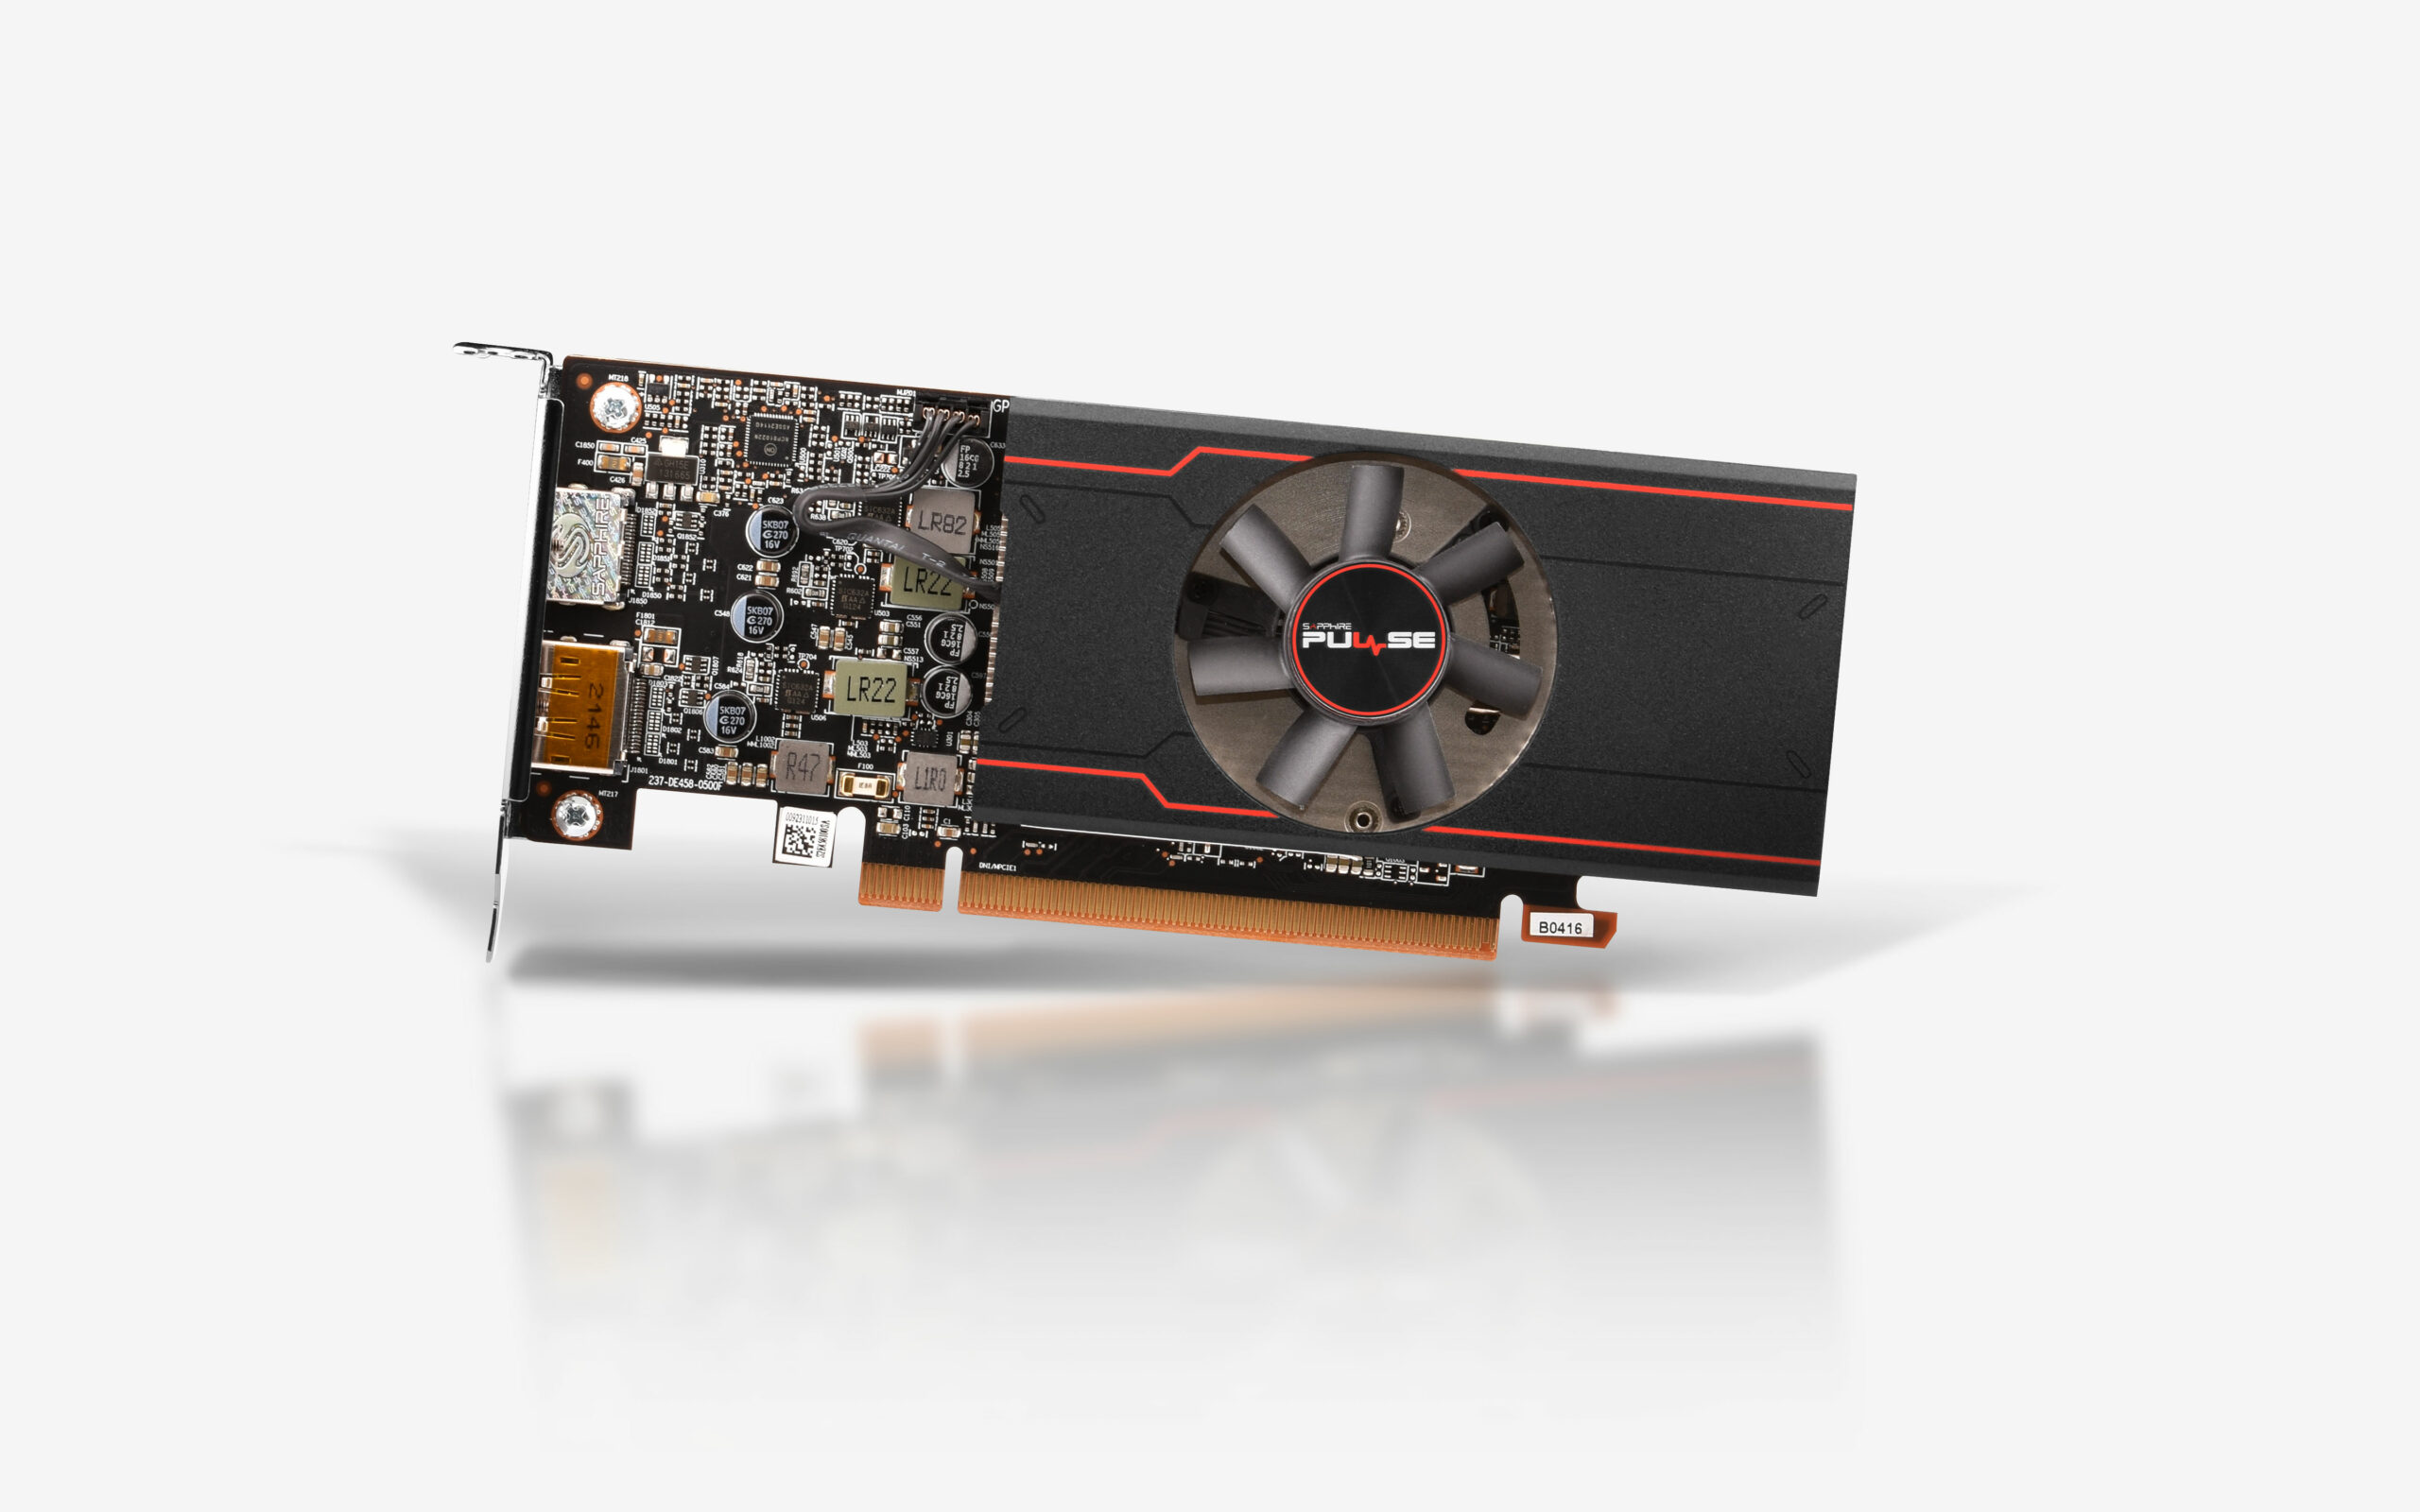 AMD выпустила первый процессор Ryzen 7 5800X3D с памятью 3D V-Cache и бюджетную видеокарту Radeon RX 6400